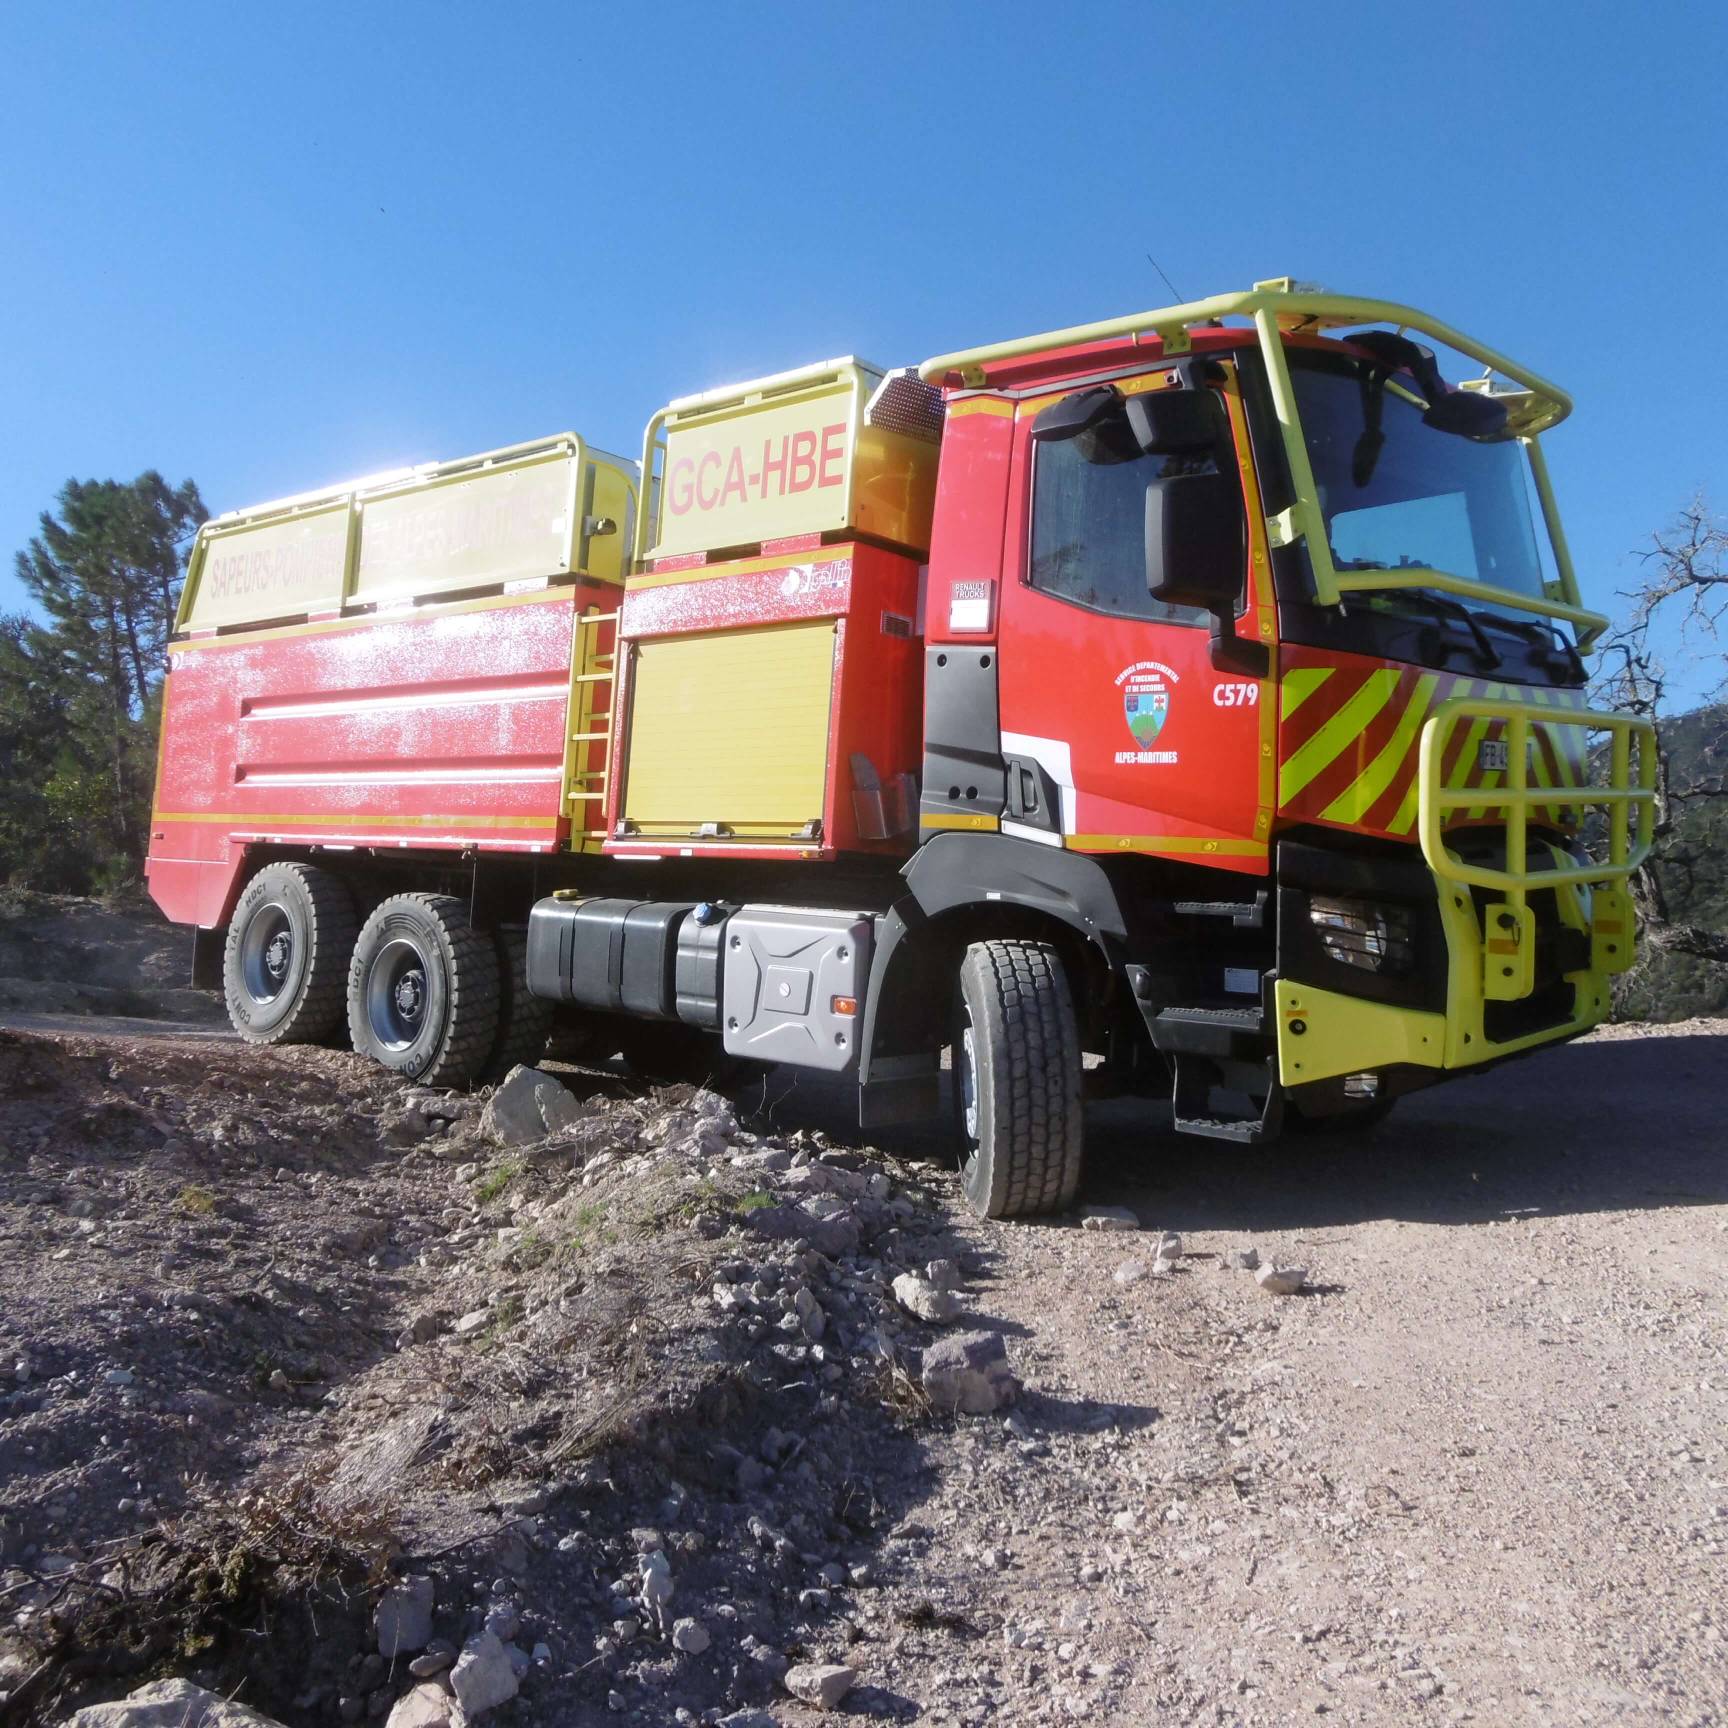 H0 IFA camion G 5 pompiers équipe transporteur bâche lumière bleue rda 14101551 